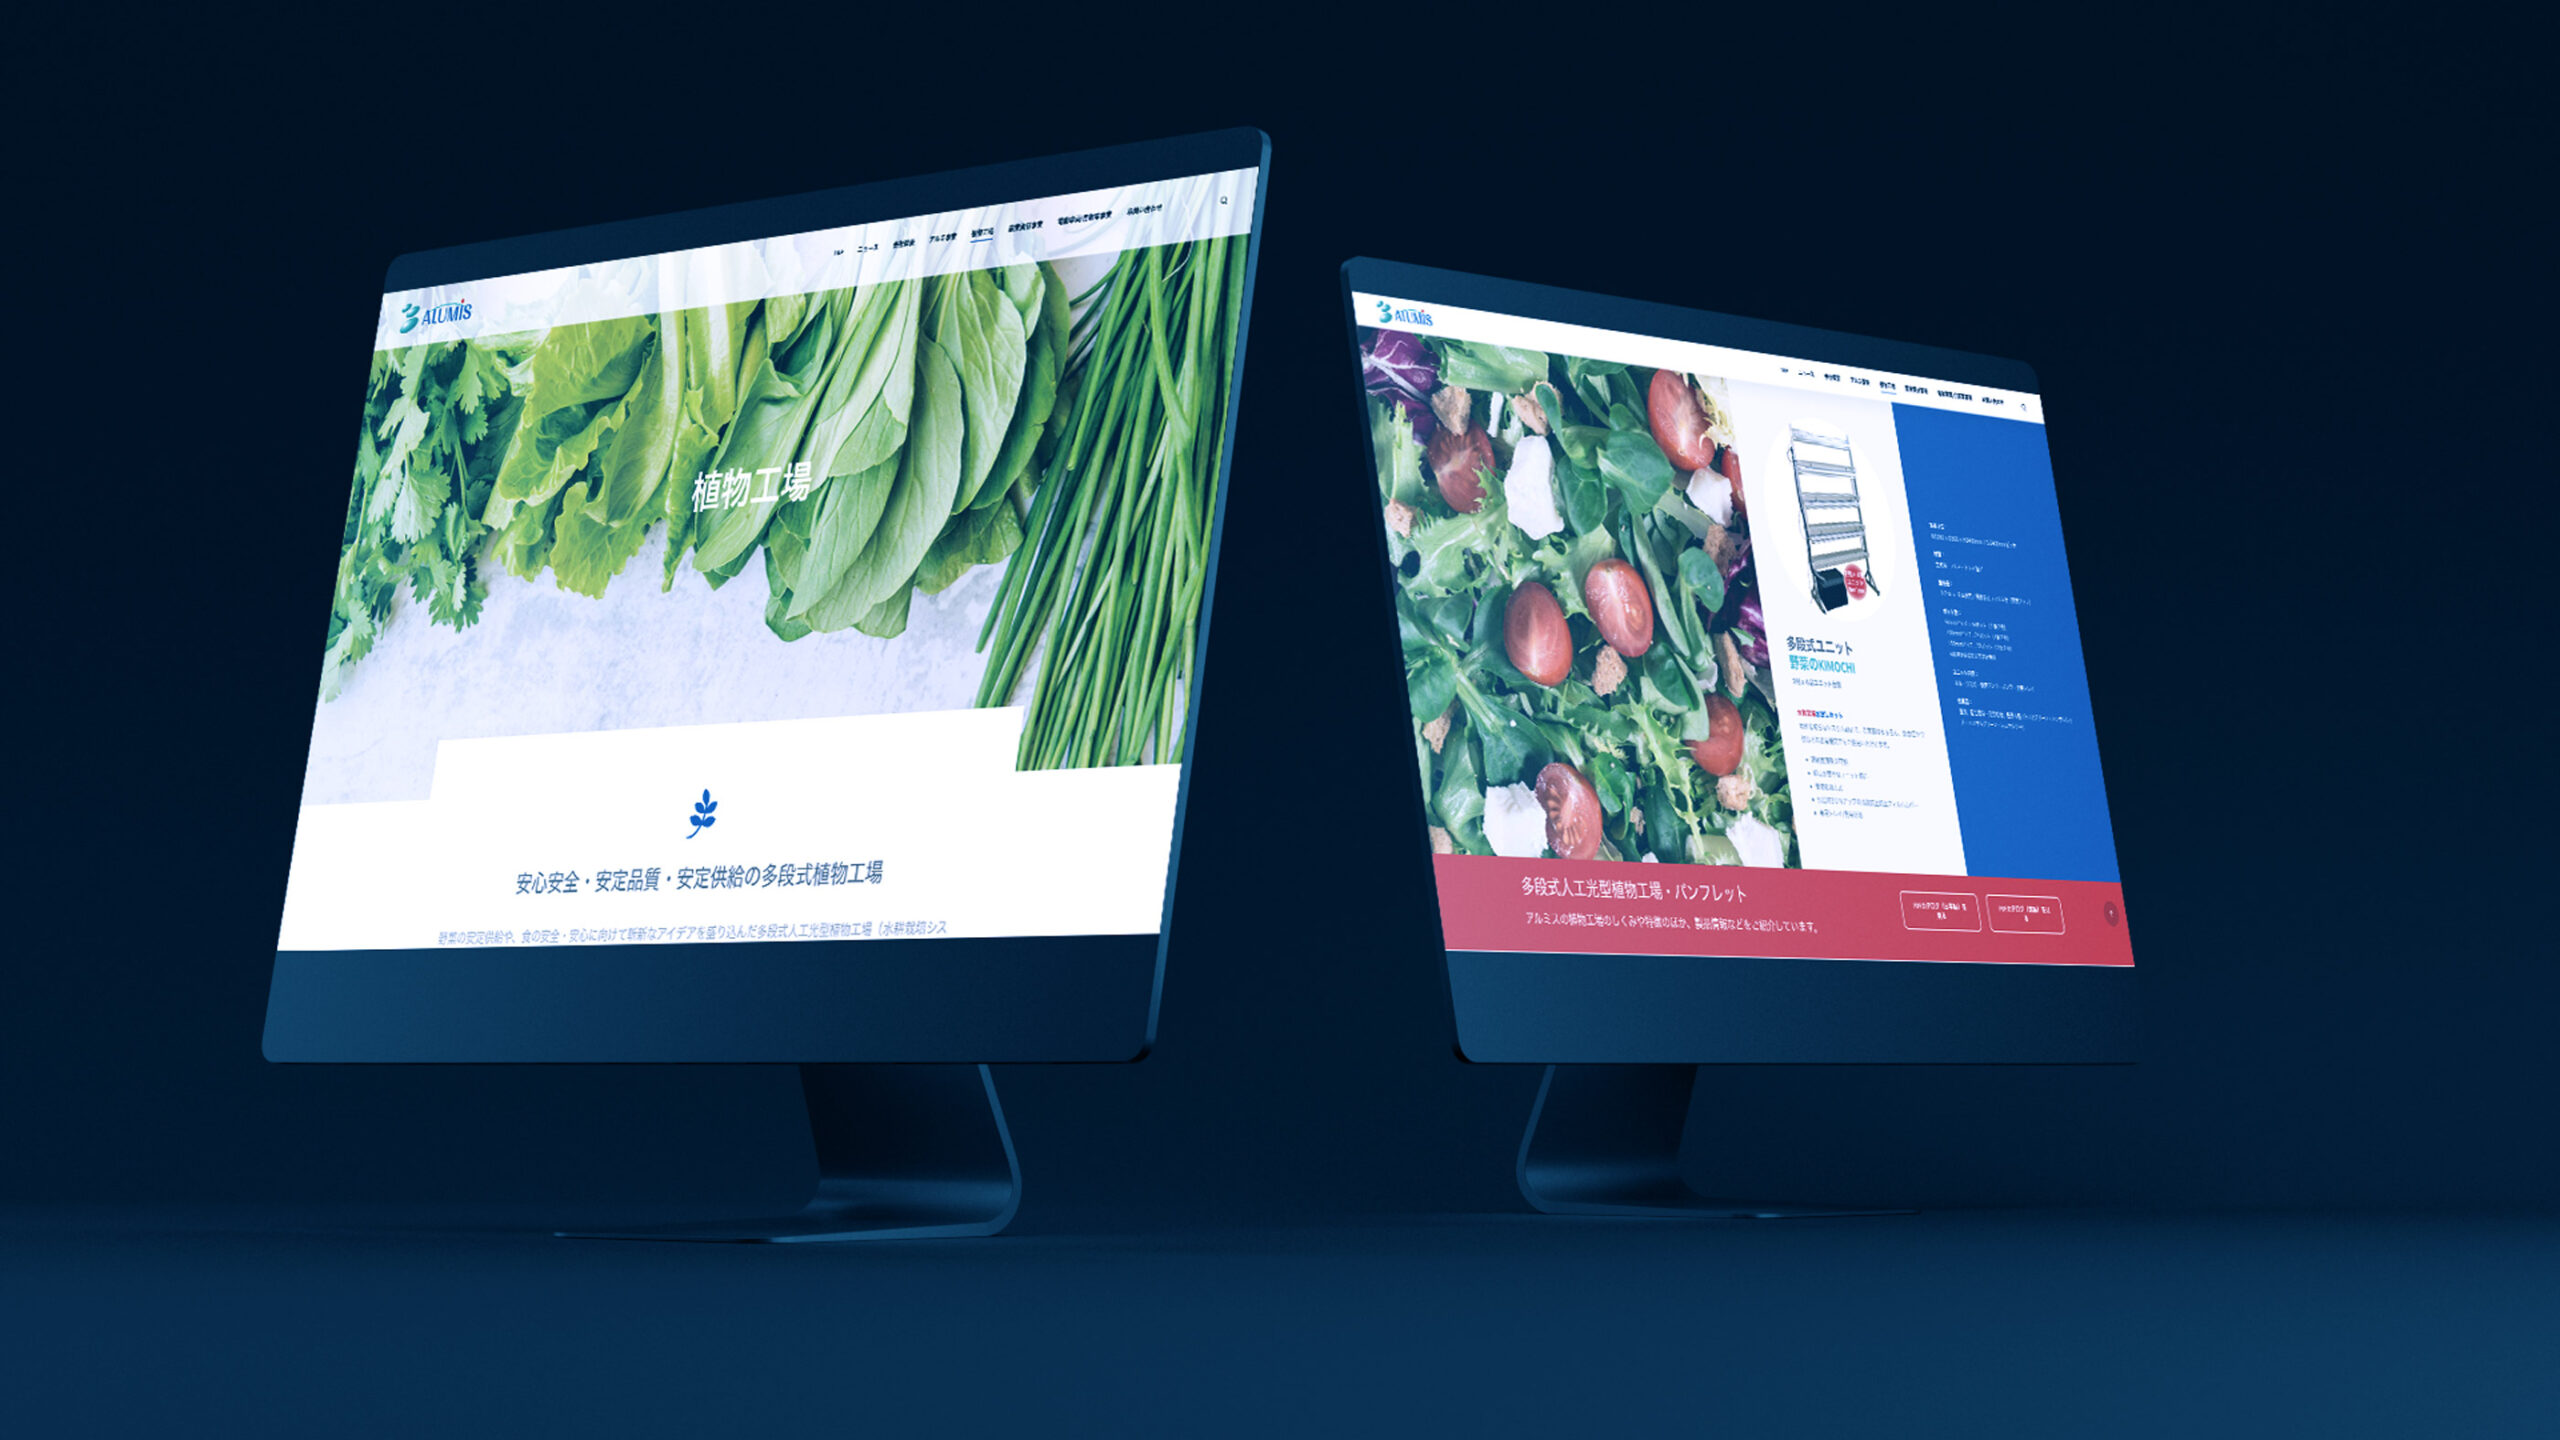 株式会社アルミス佐賀本社の植物工場ページウェブデザインがデスクトップパソコンに表示されているスティルライフグラフィック写真